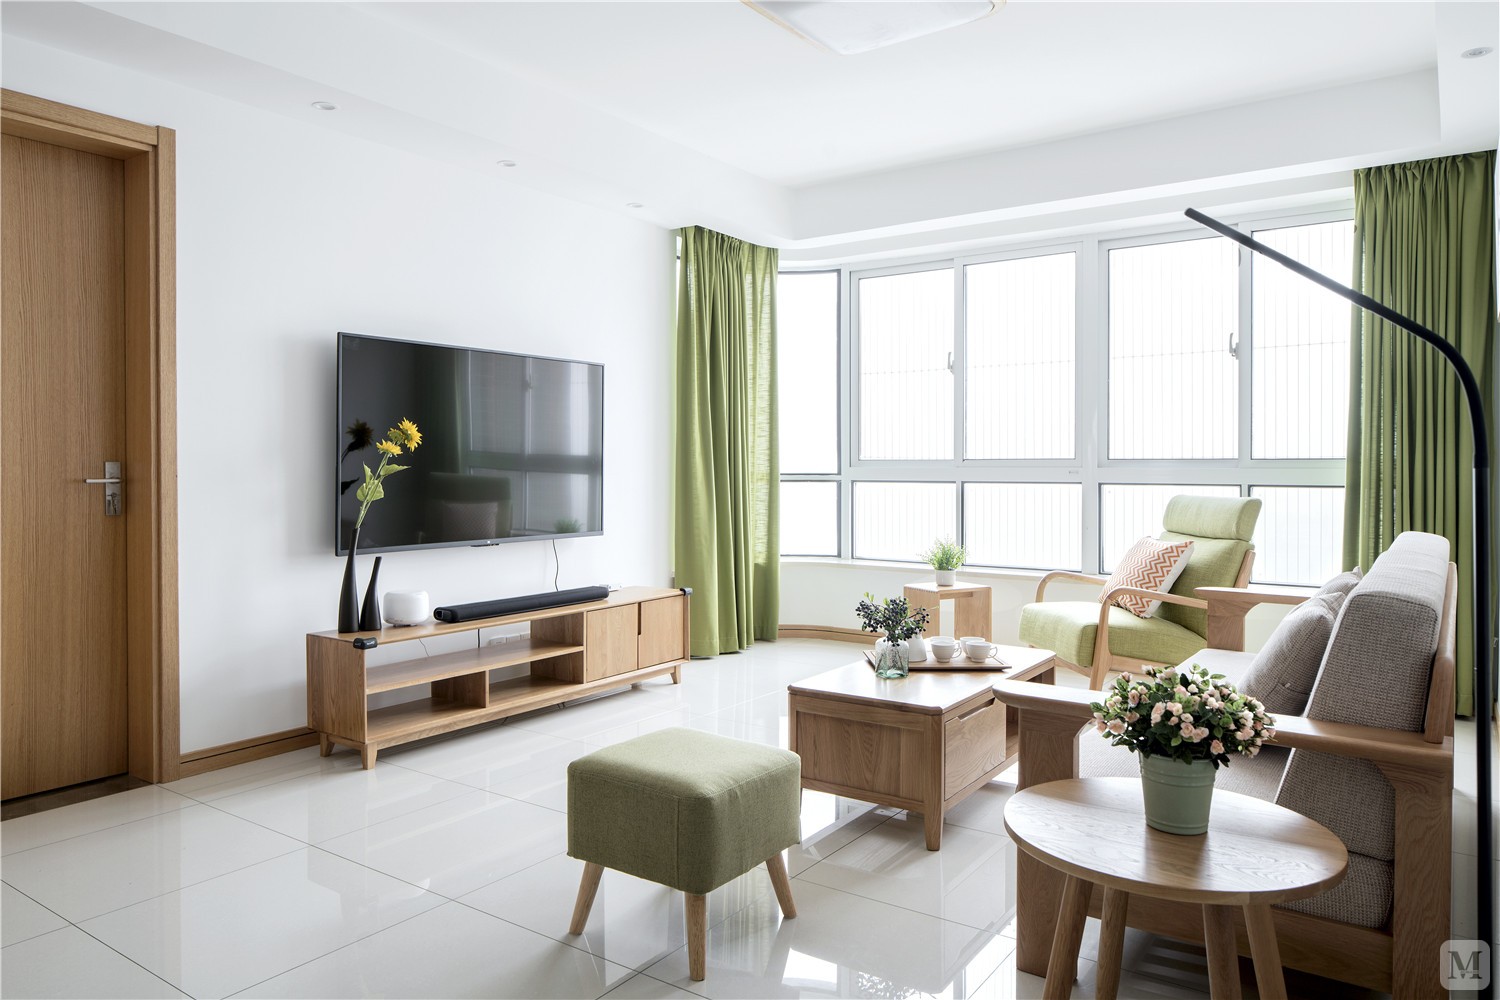 客厅主要以浅色调和极简设计为特色，它以简洁干净的纯白为底色，点缀以抹茶绿的软装，将不断变化的自然光线收入室内，隐隐透露出一种舒适、温暖的感觉。